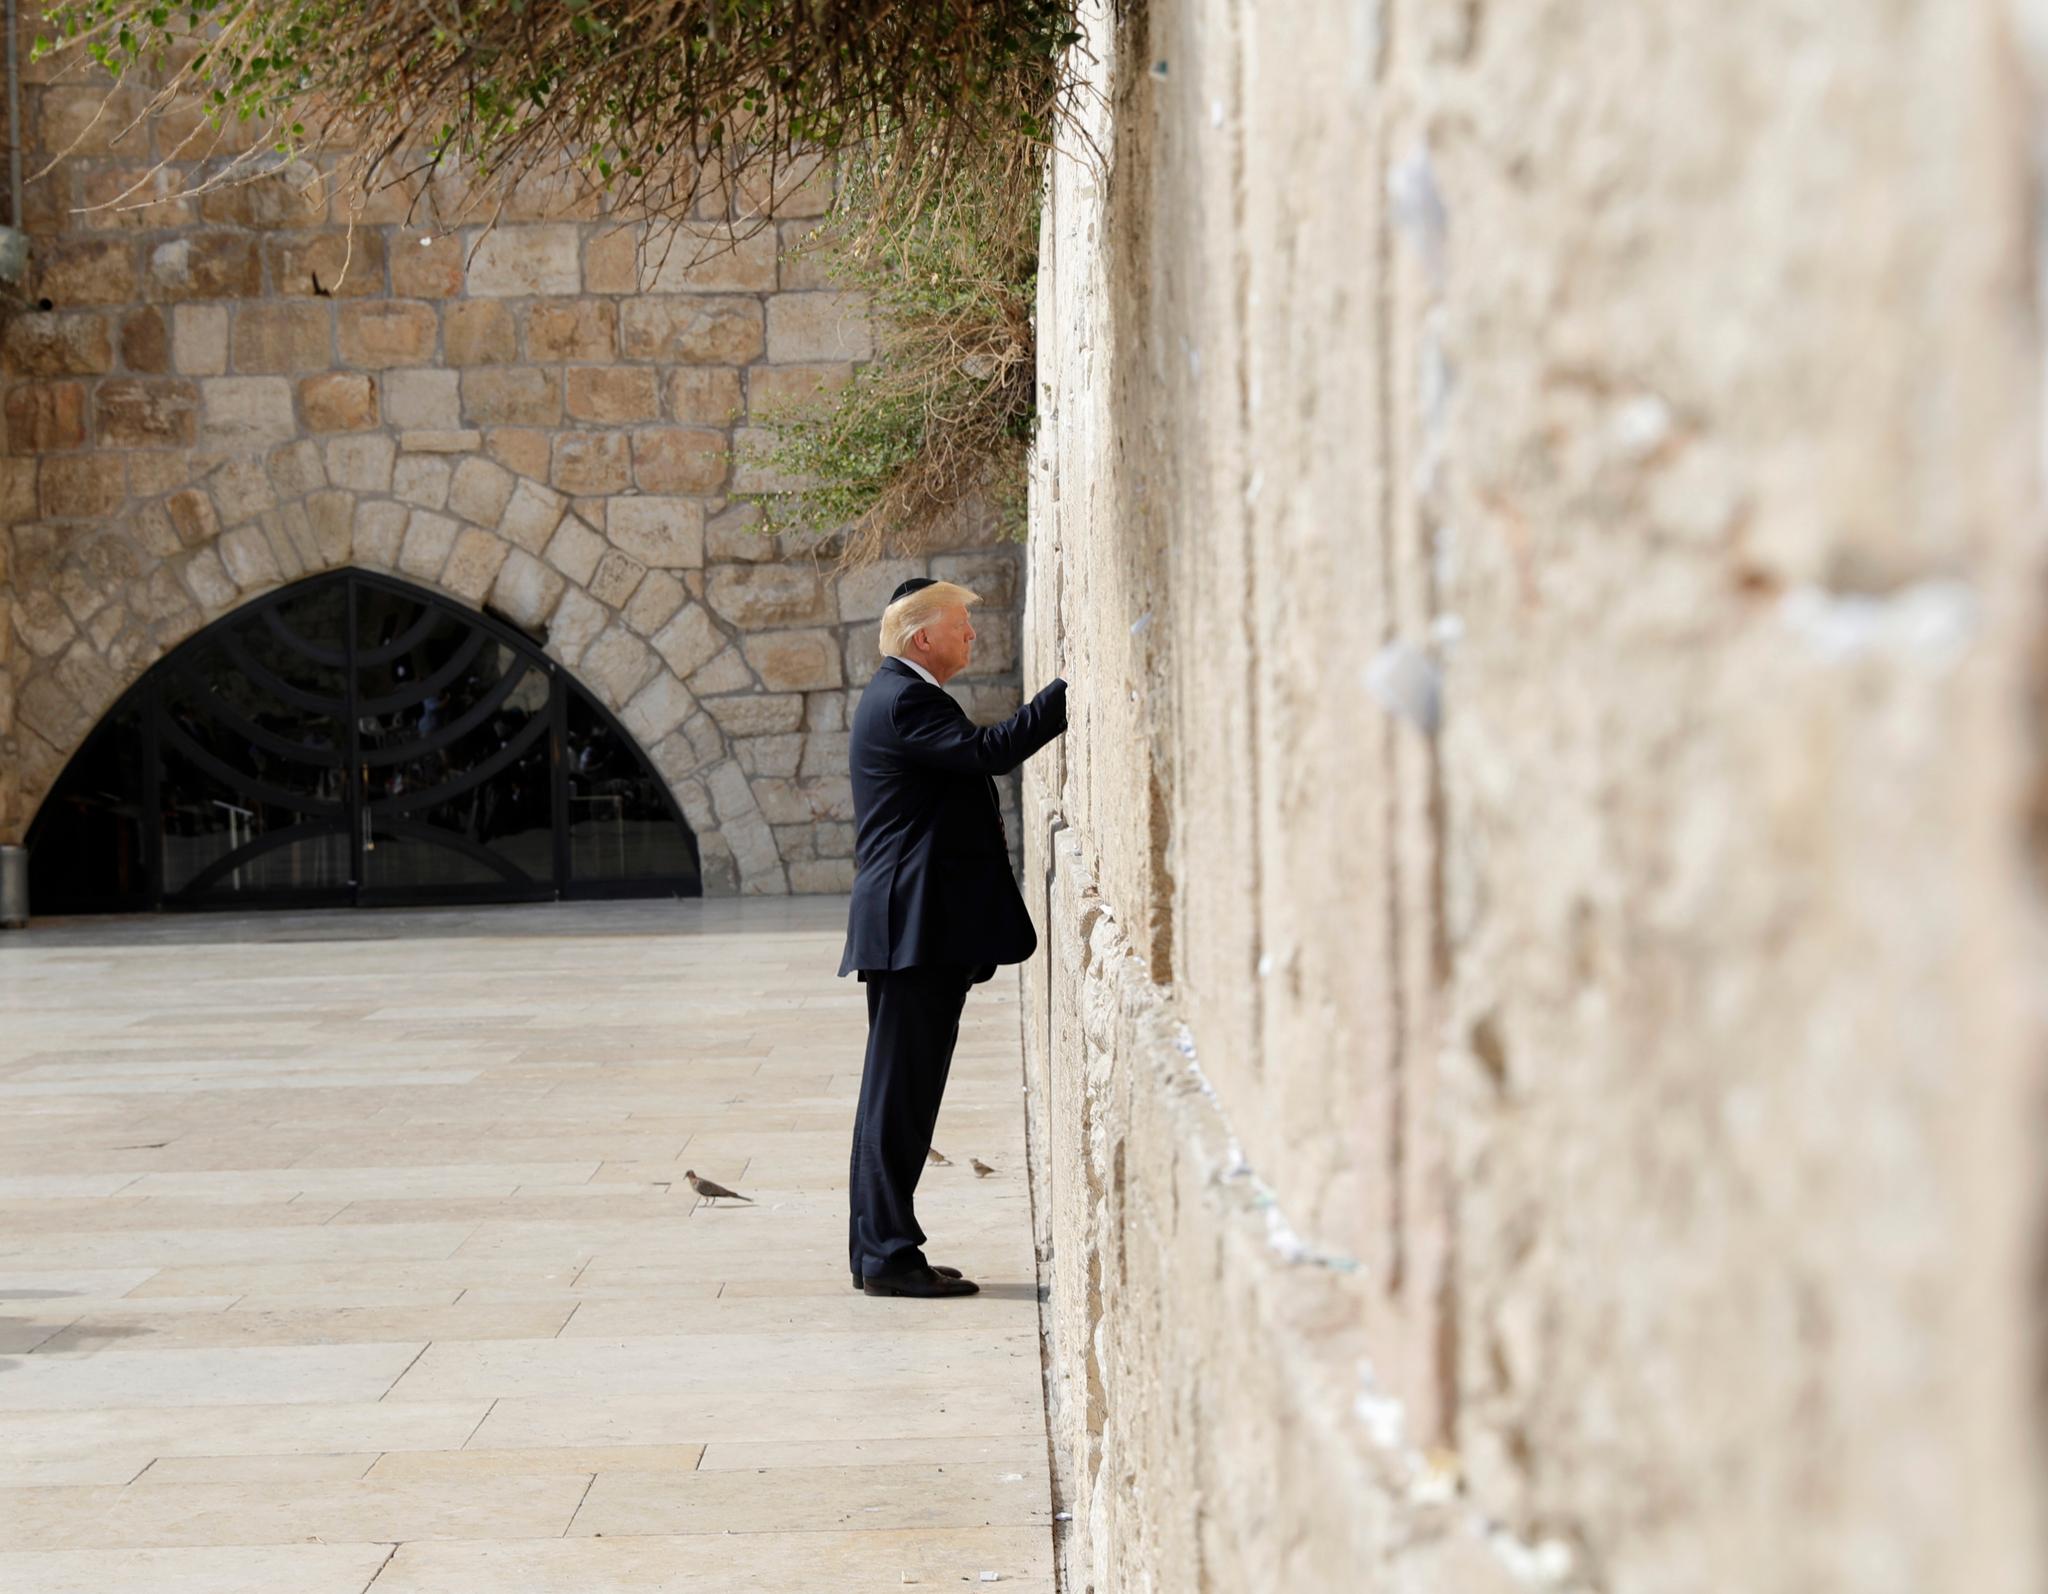  Etter først å ha besøkt Gravkirken, det helligste stedet i kristendommen, fortsatte Trump til Vestmuren, også kjent som Klagemuren. Den regnes som jødedommens helligste sted.